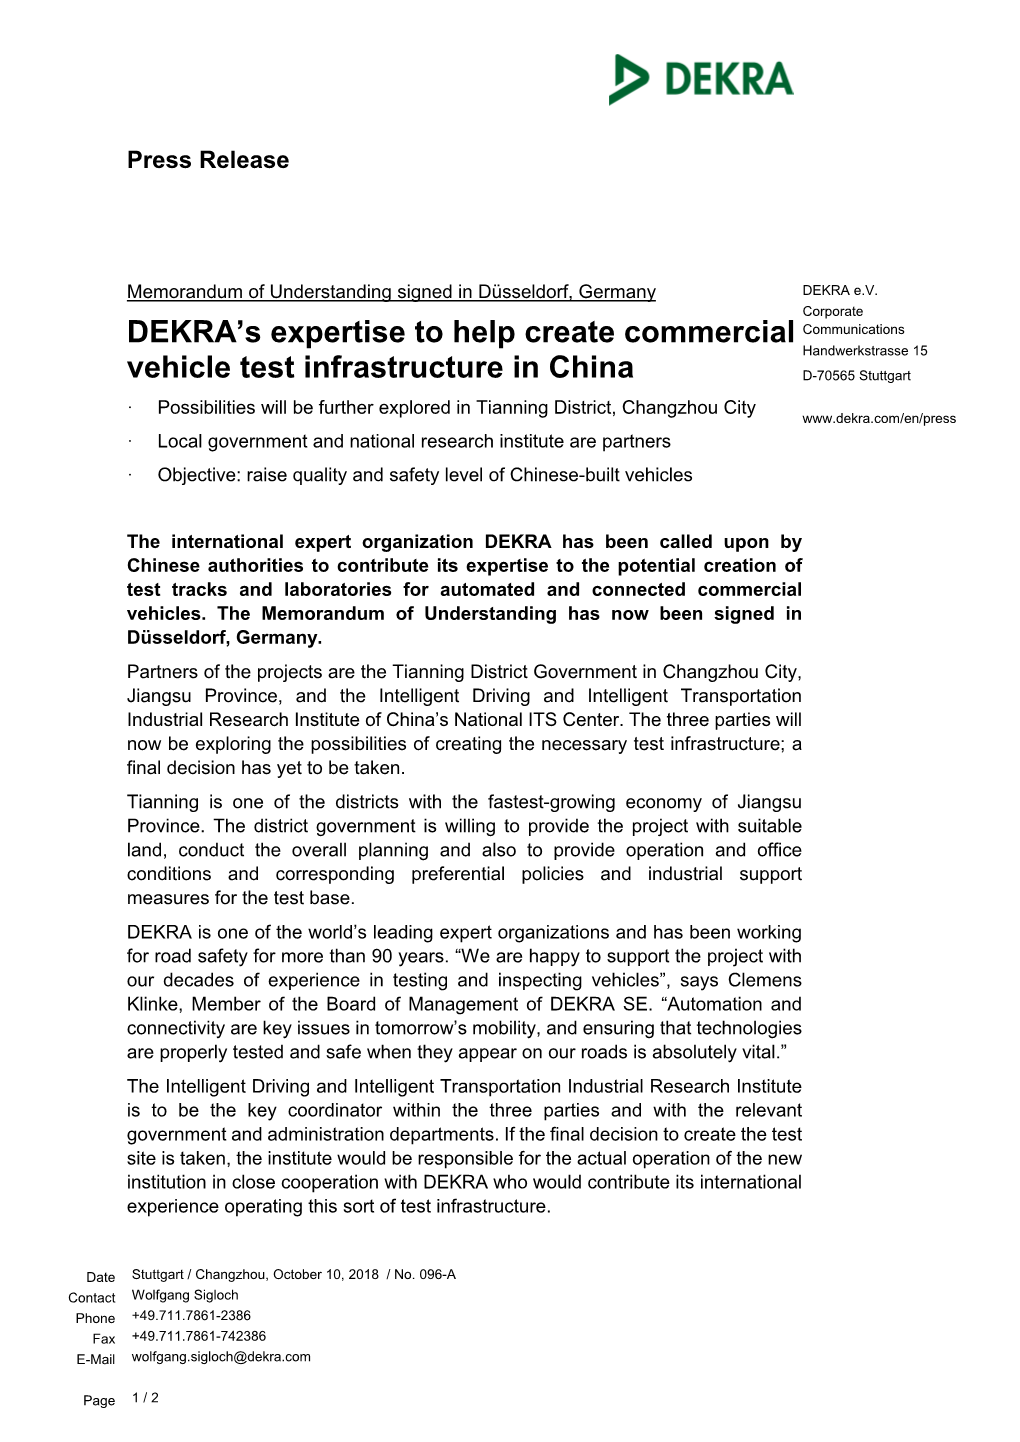 DEKRA Press Release Mou Test Center Tianning